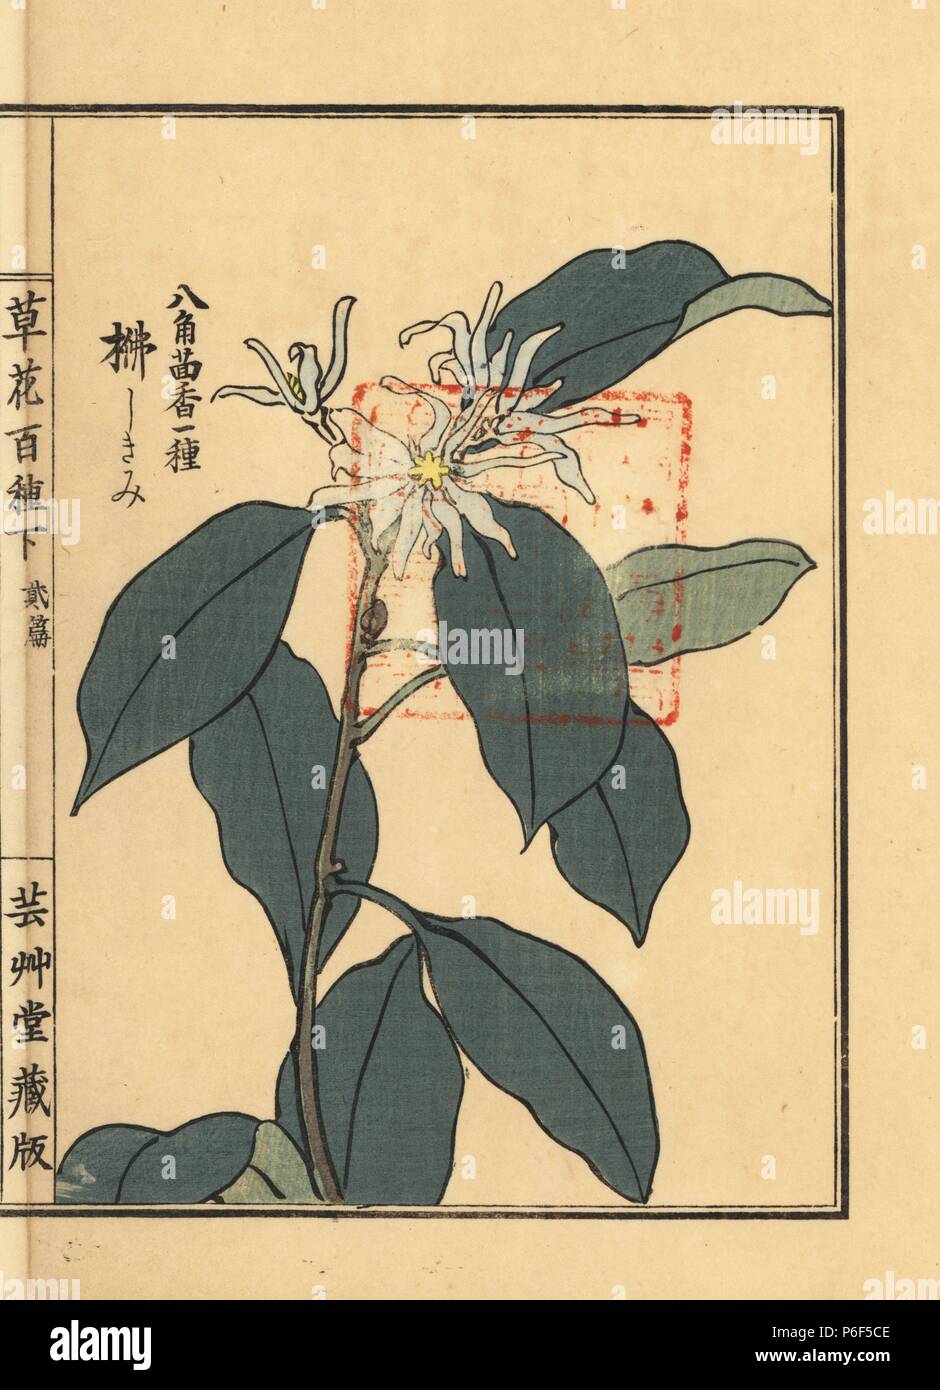 Shikimi or Japanese star anise, Illicium anisatum. Handcoloured woodblock print by Kono Bairei from Kusa Bana Hyakushu (One Hundred Varieties of Flowers), Tokyo, Yamada, 1901. Stock Photo